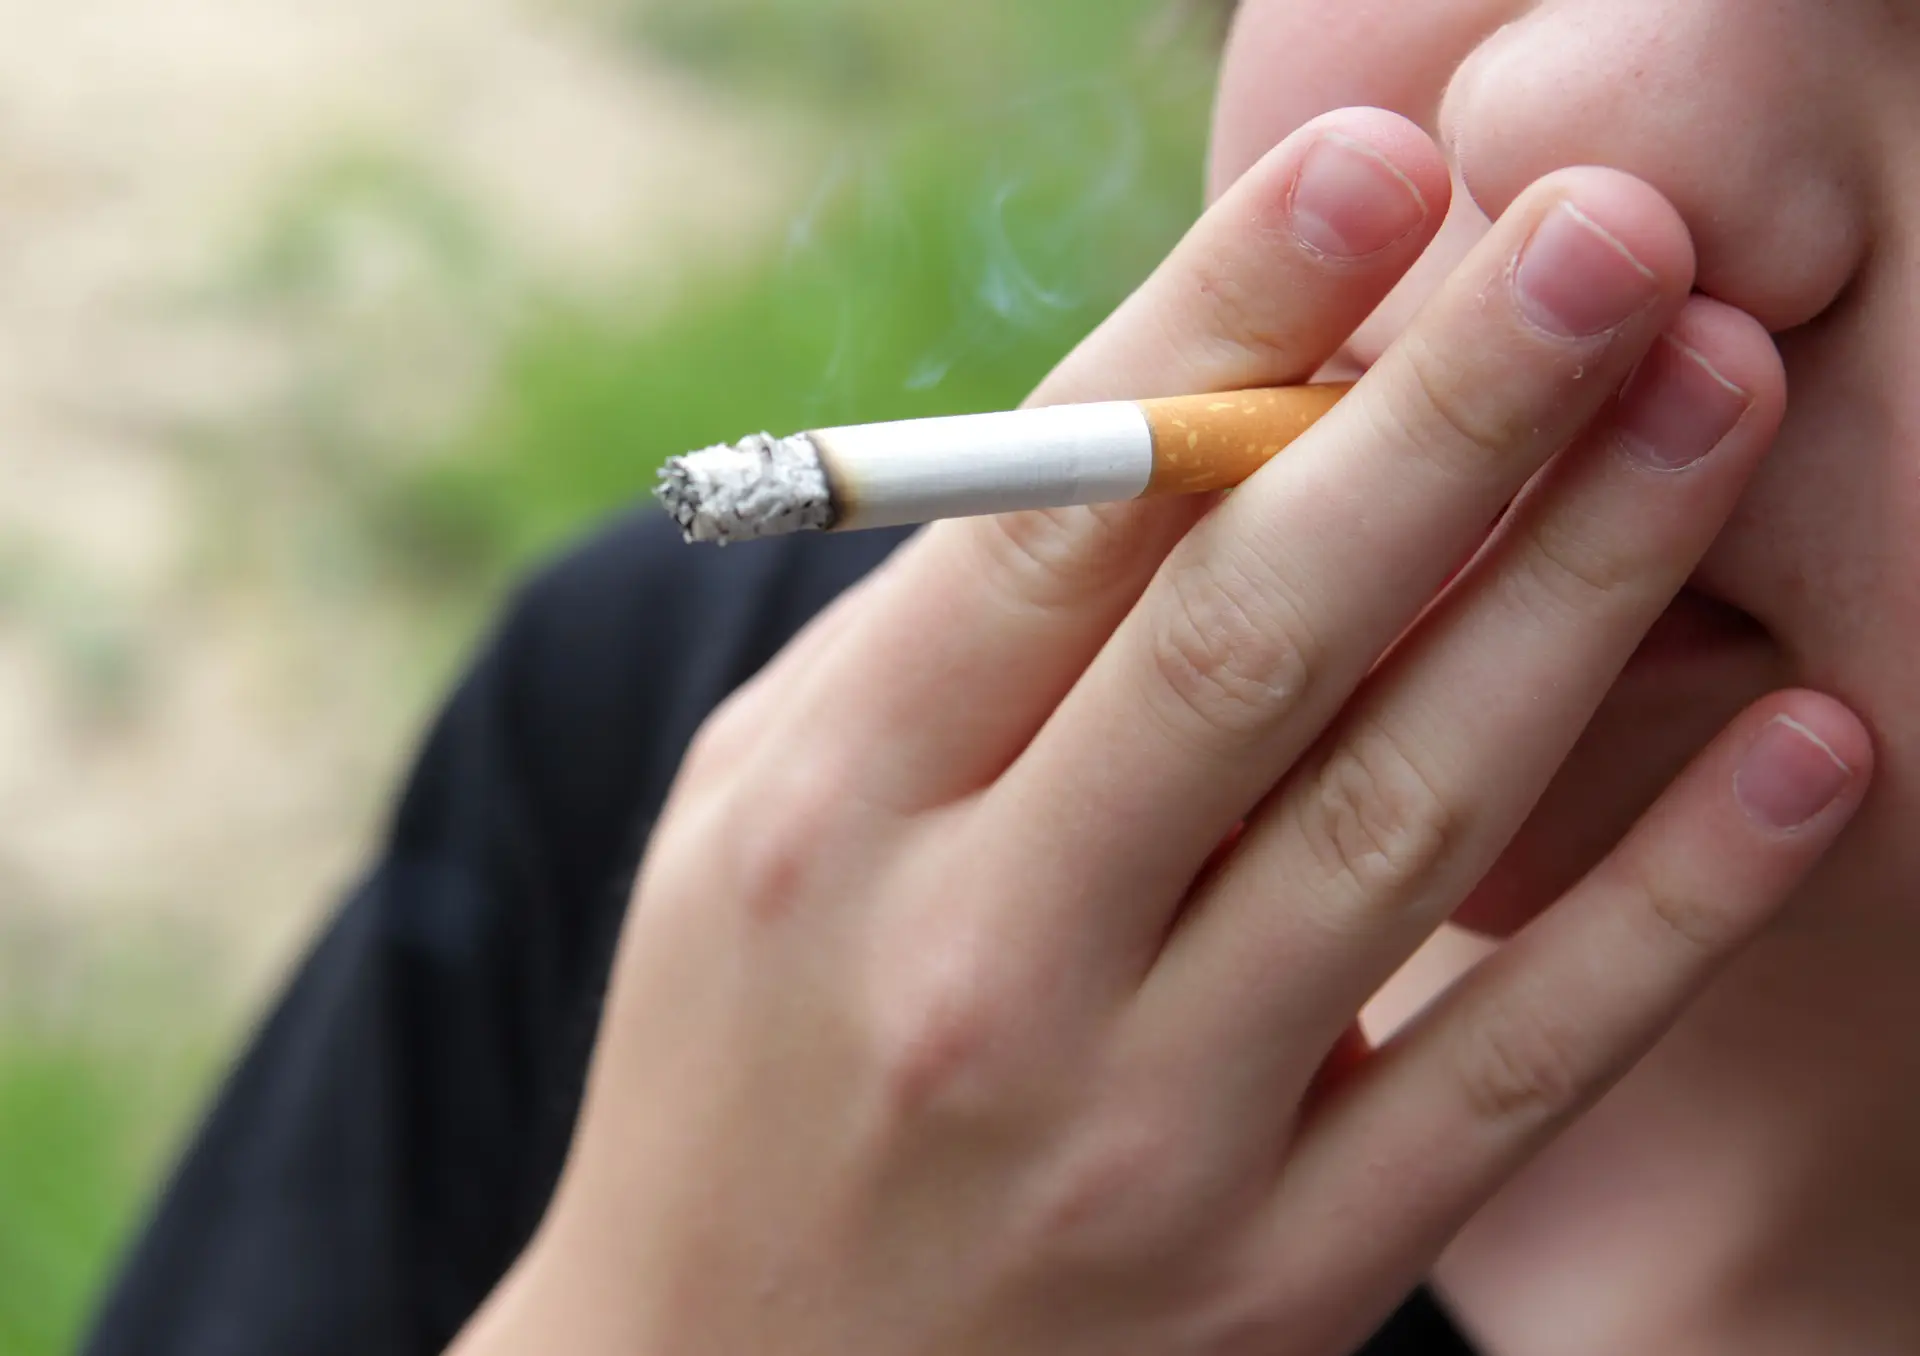 Deixar de fumar pode custar até 200 euros por mês: preços dos medicamentos antitabágicos são uma "barreira enorme"